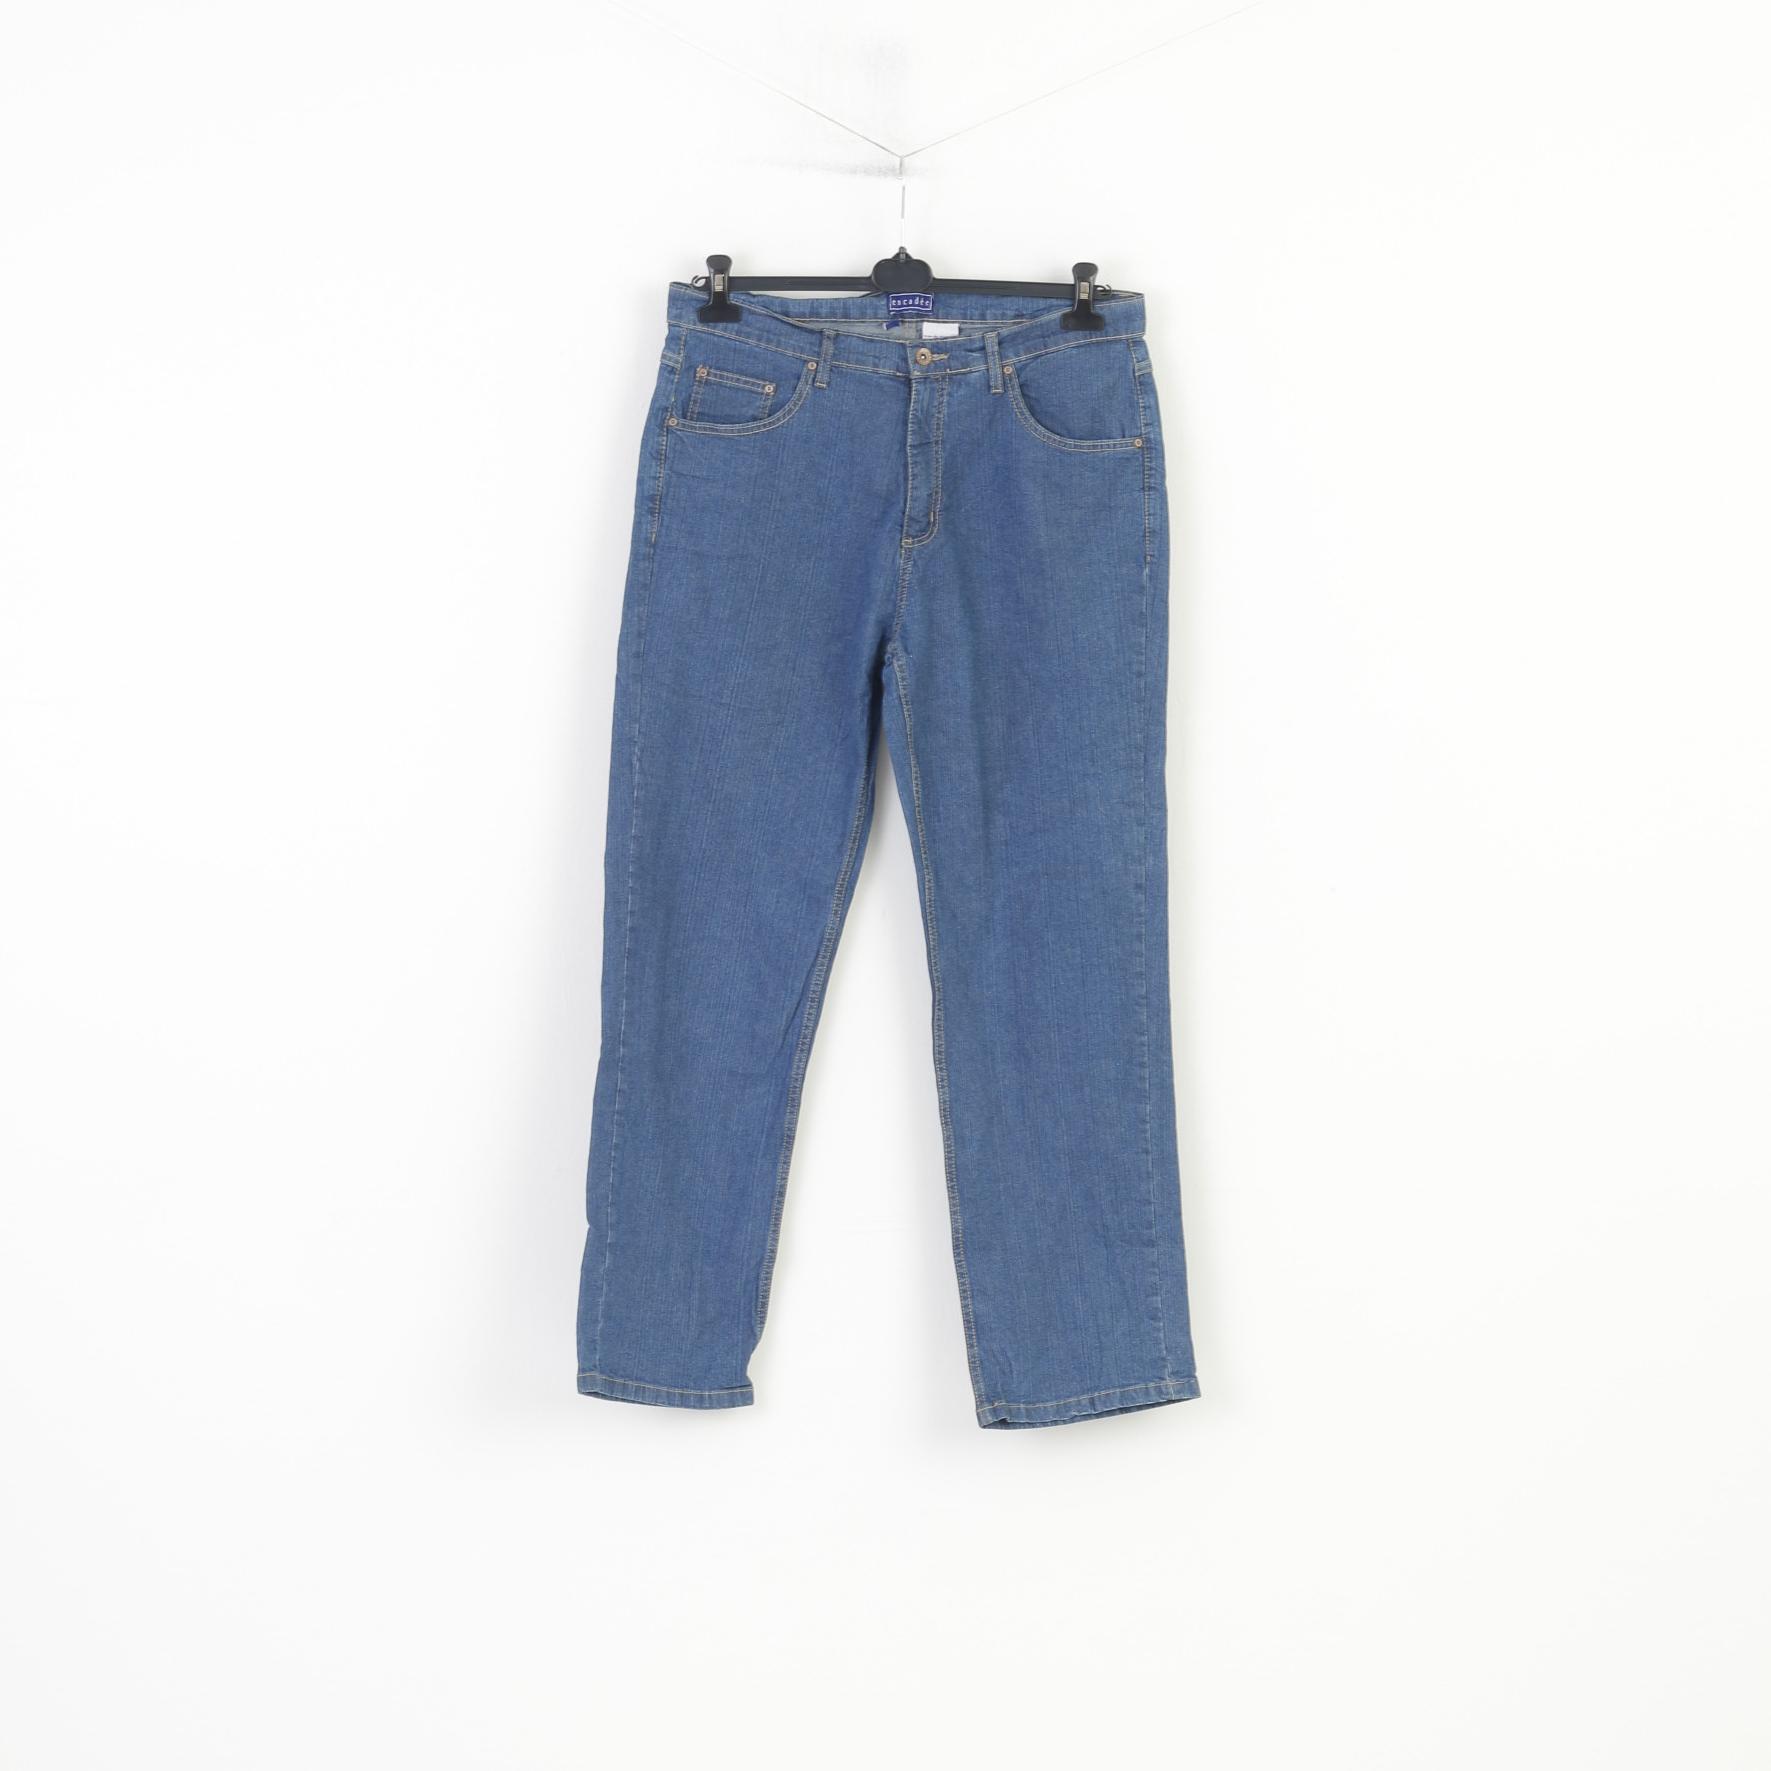 Encadee Women 46 Trousers Denim Jeans Blue Cotton Vintage Classic Pants